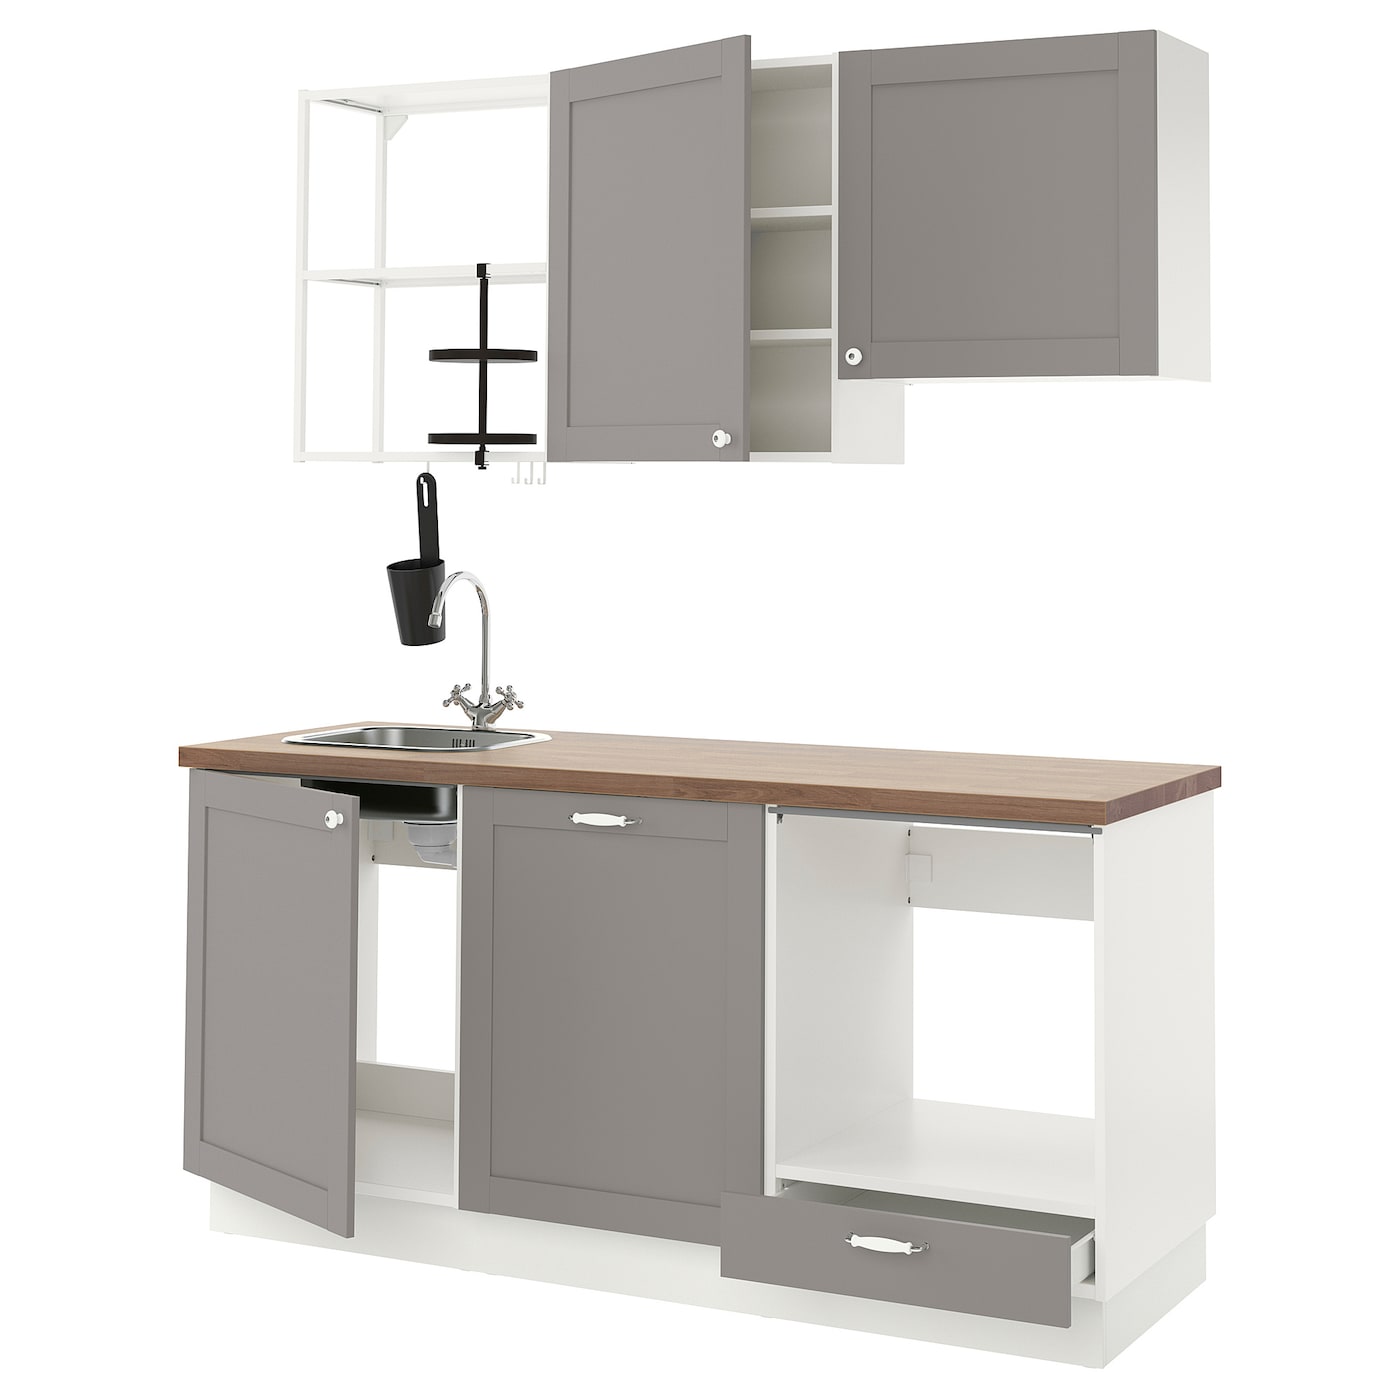 Кухня -  ENHET  IKEA/ ЭНХЕТ ИКЕА, 222х183 см, белый/серый